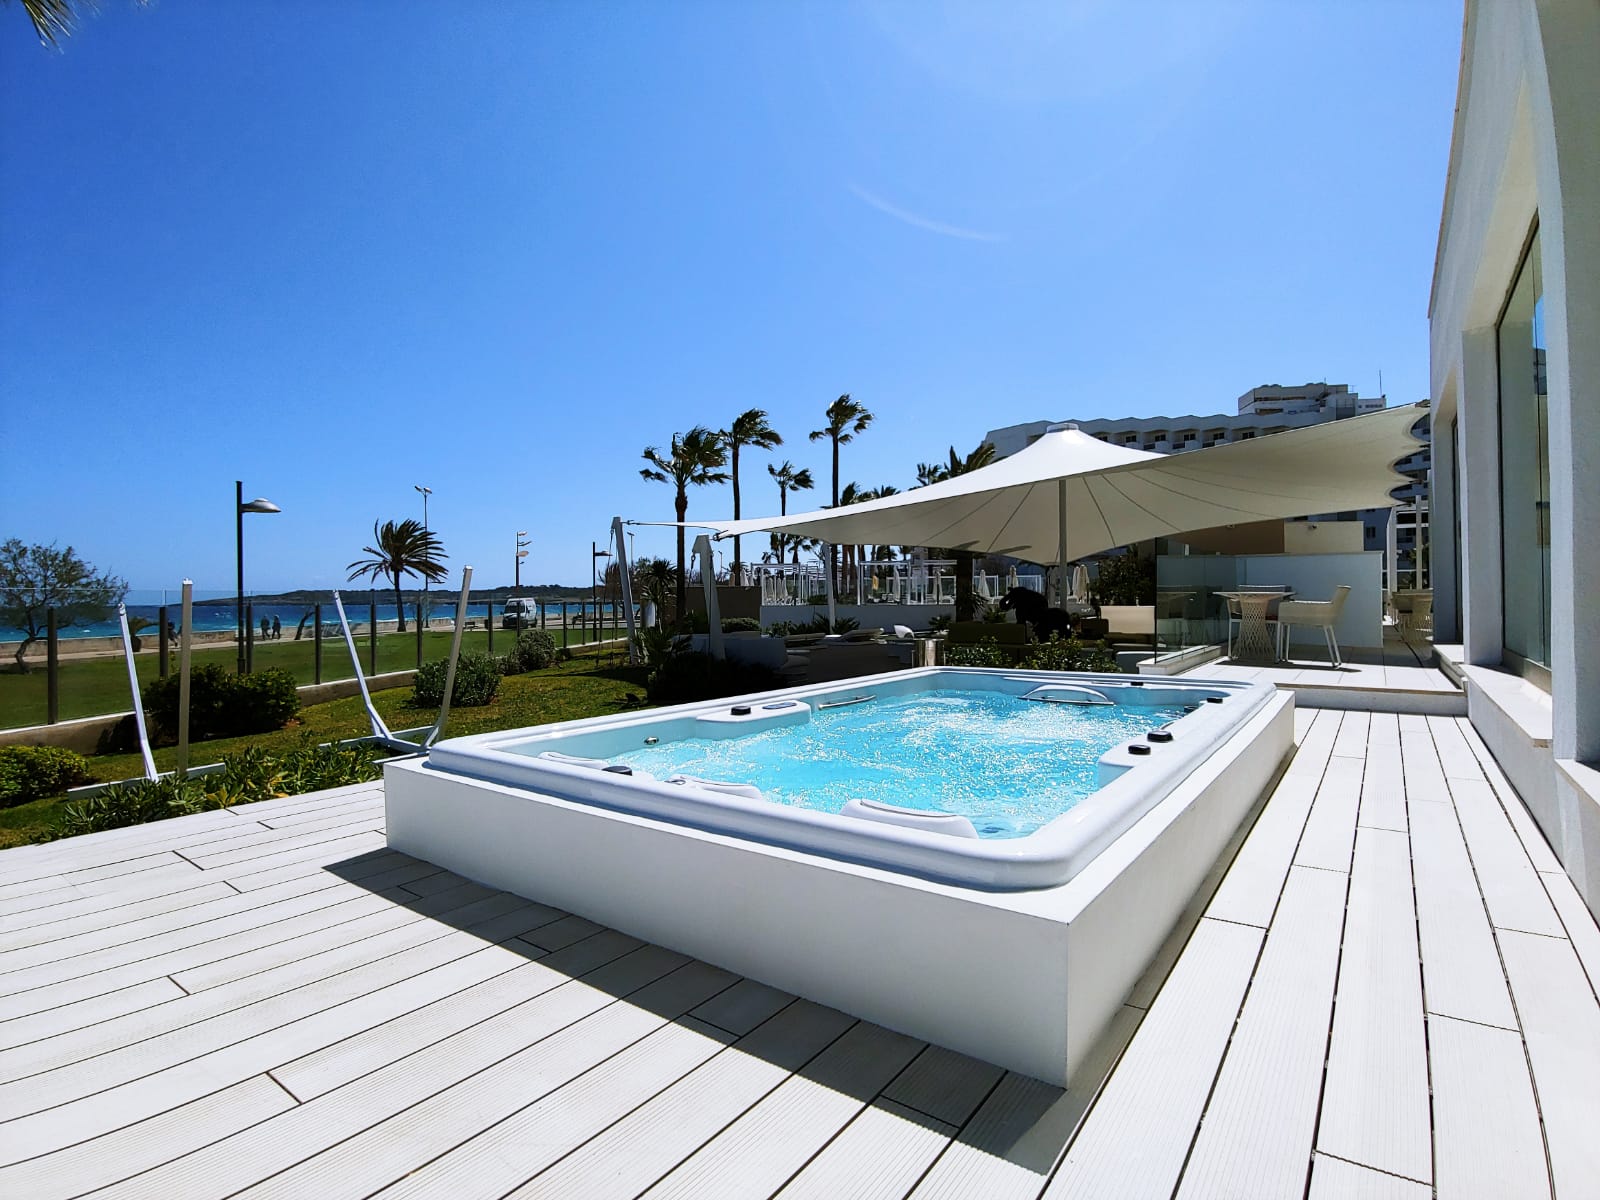 Protur Sa Coma Playa Hotel & Spa apuesta por instalaciones de bienestar